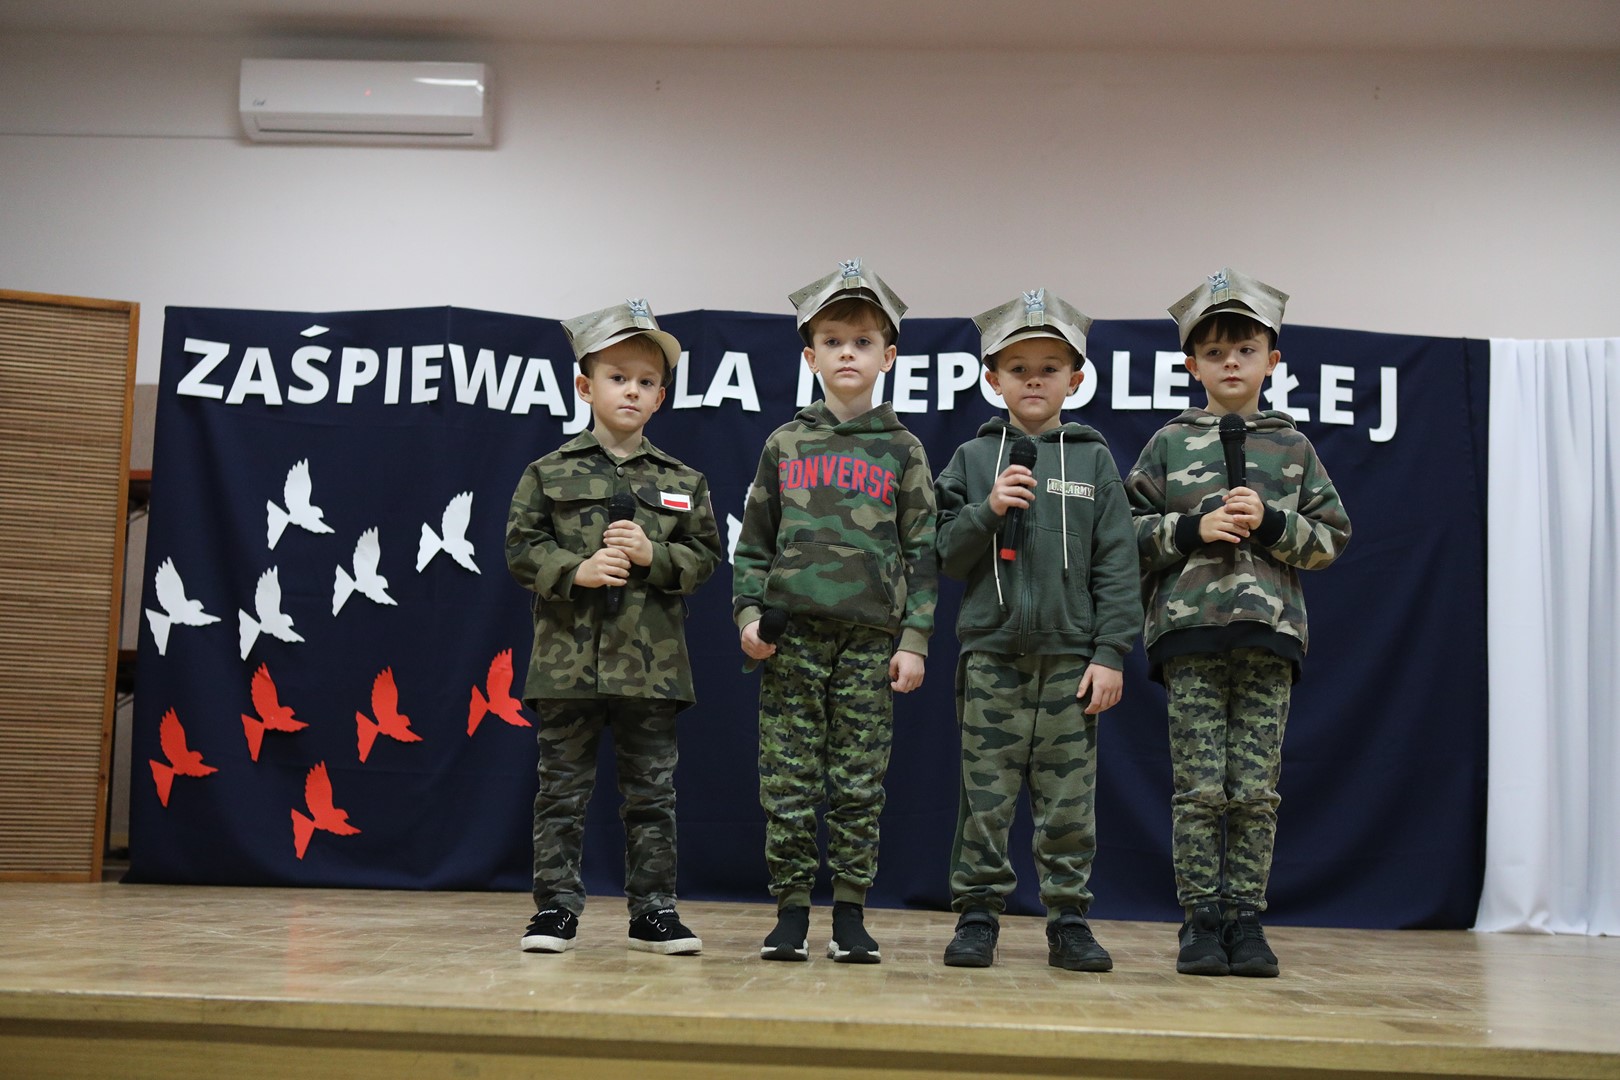 Uczestnicy konkursu podczas występu wokalnego - 4 chłopców.